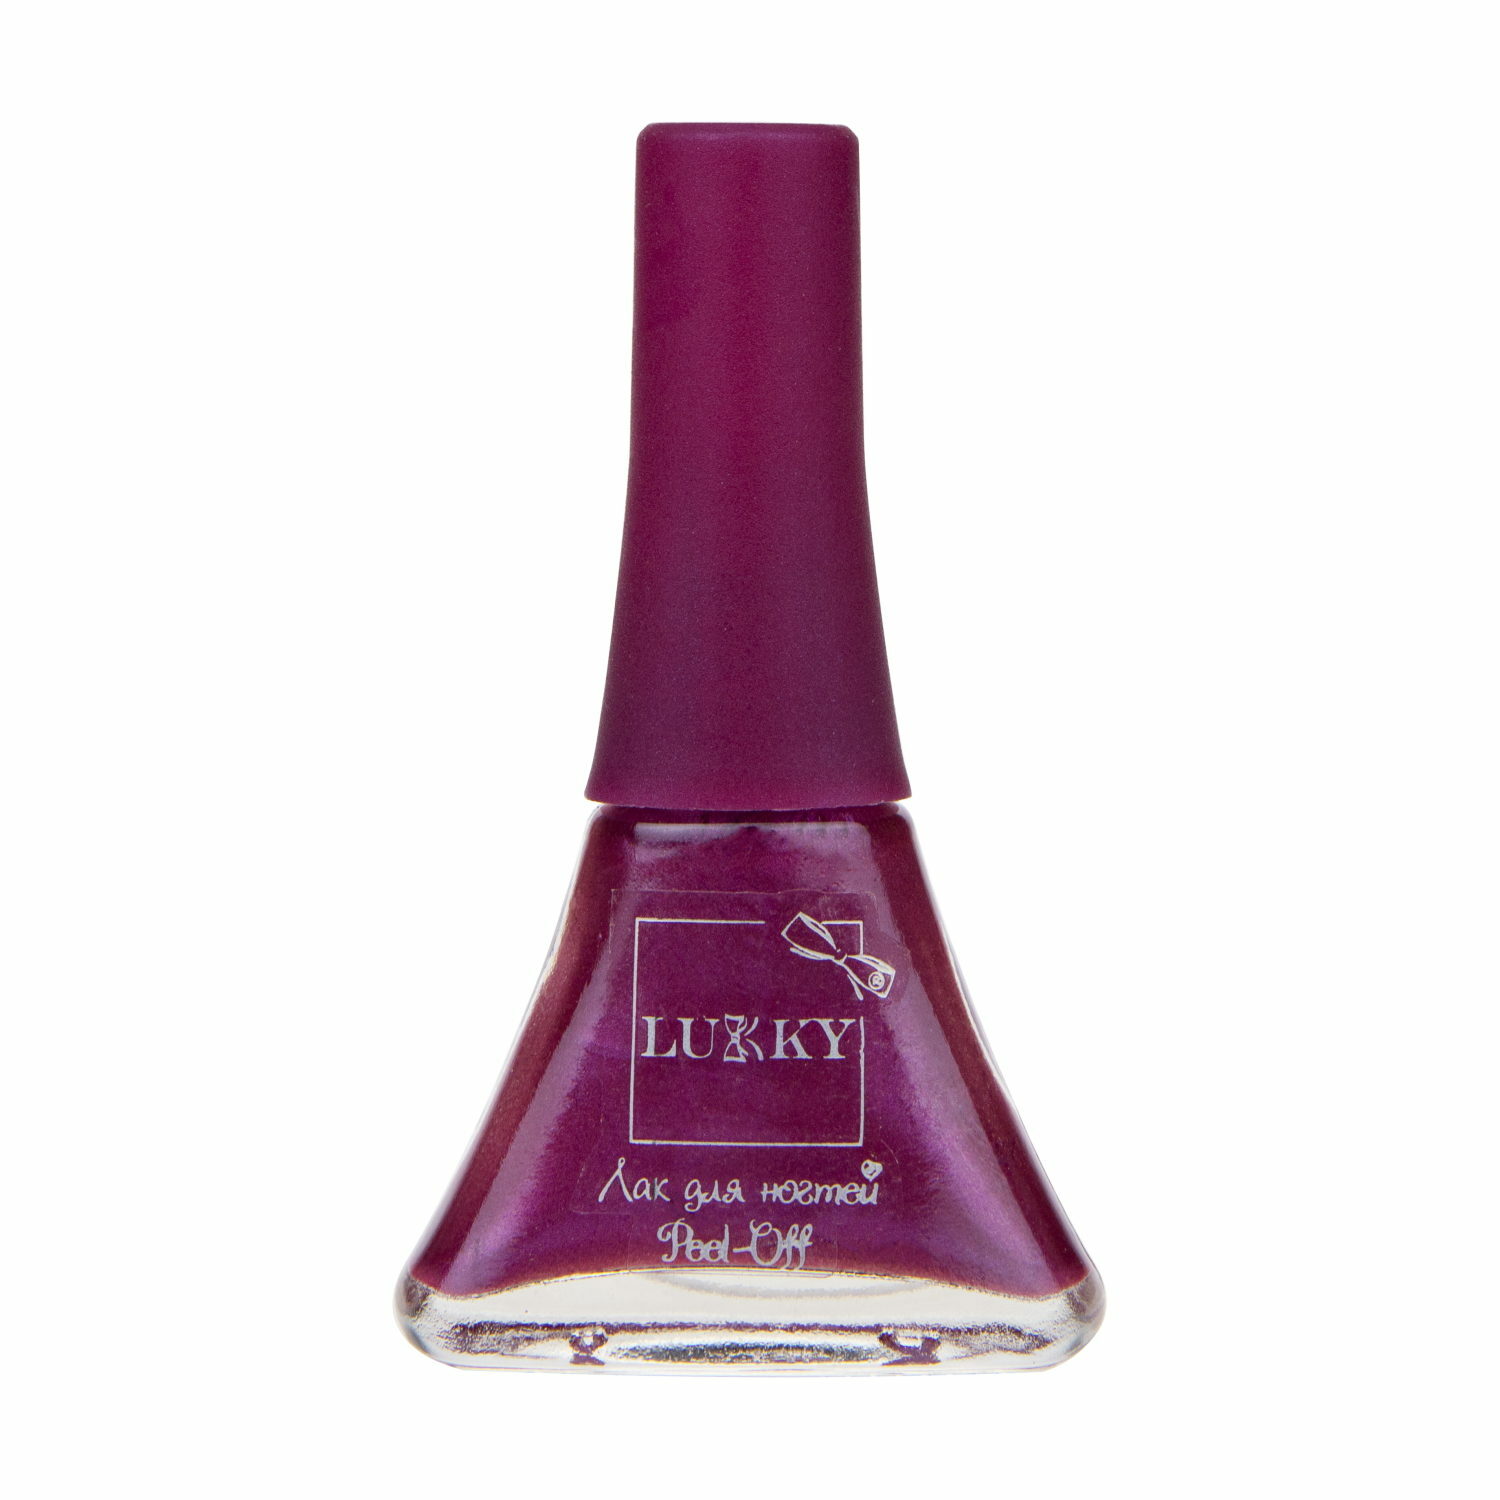 Набор лаков для ногтей Lukky Peel-off Цветик-Семицветик, 7 шт., Т20987